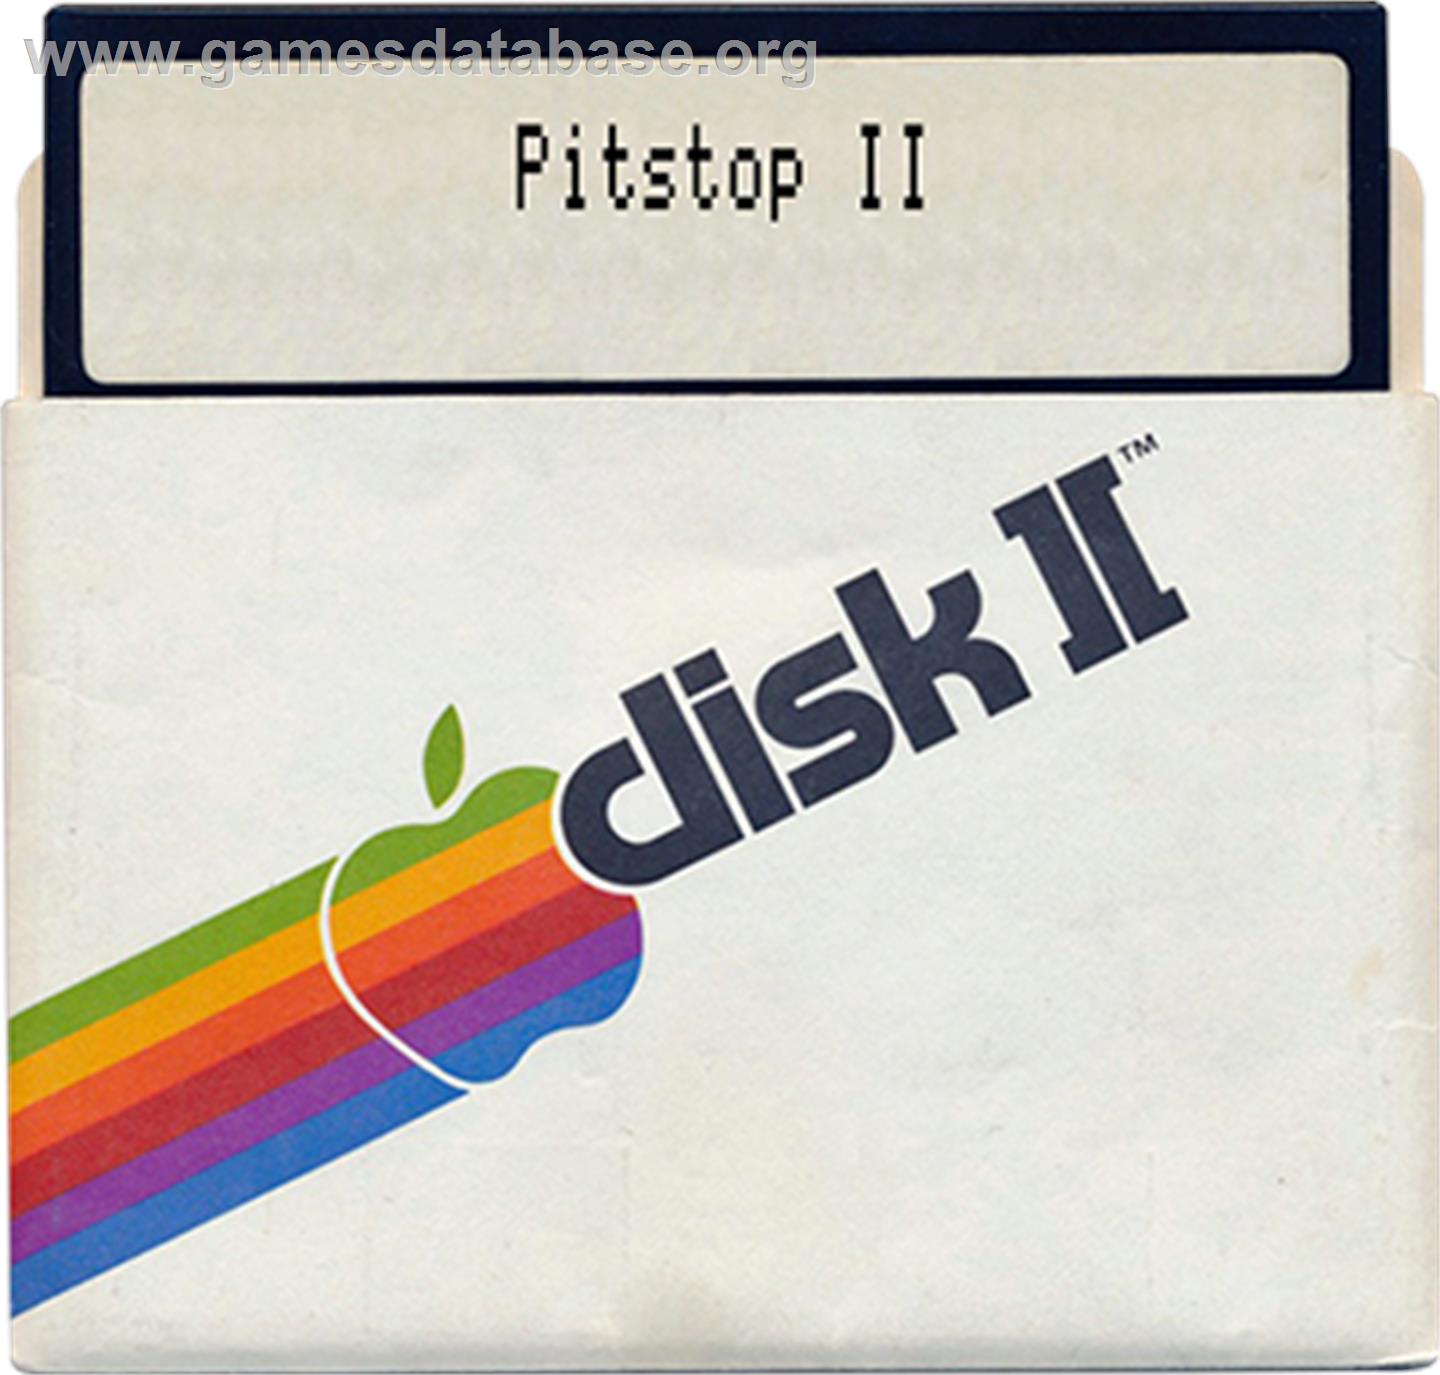 Pitstop 2 - Apple II - Artwork - Disc